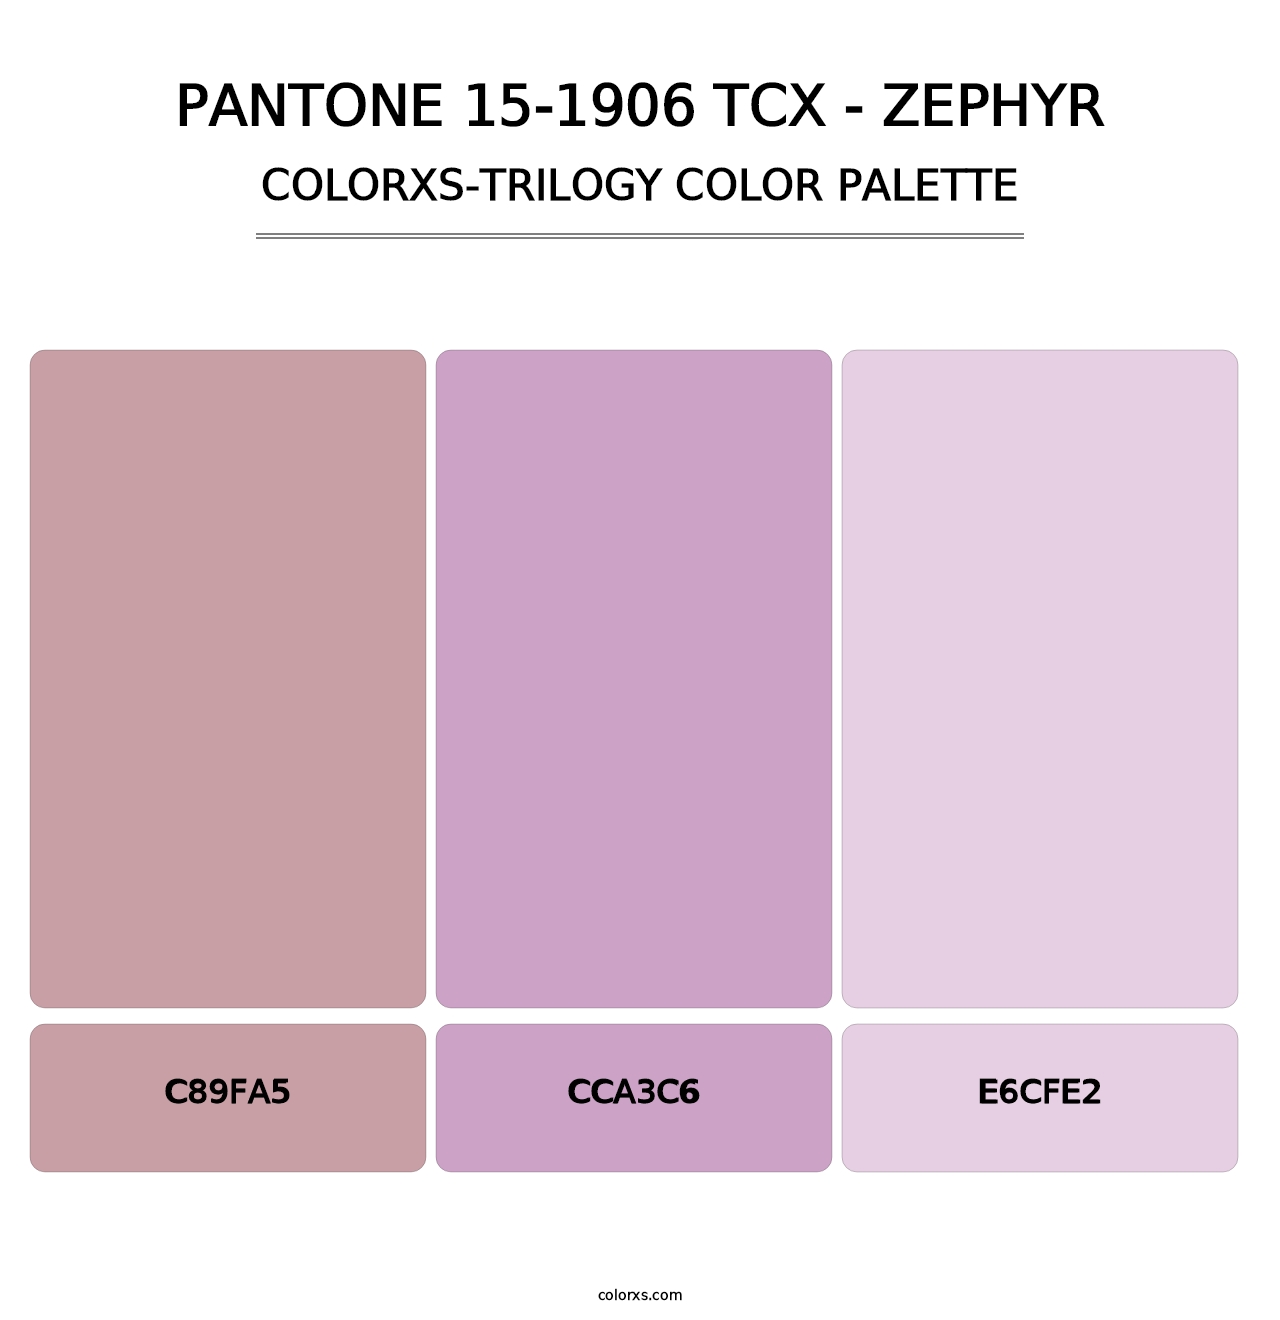 PANTONE 15-1906 TCX - Zephyr - Colorxs Trilogy Palette